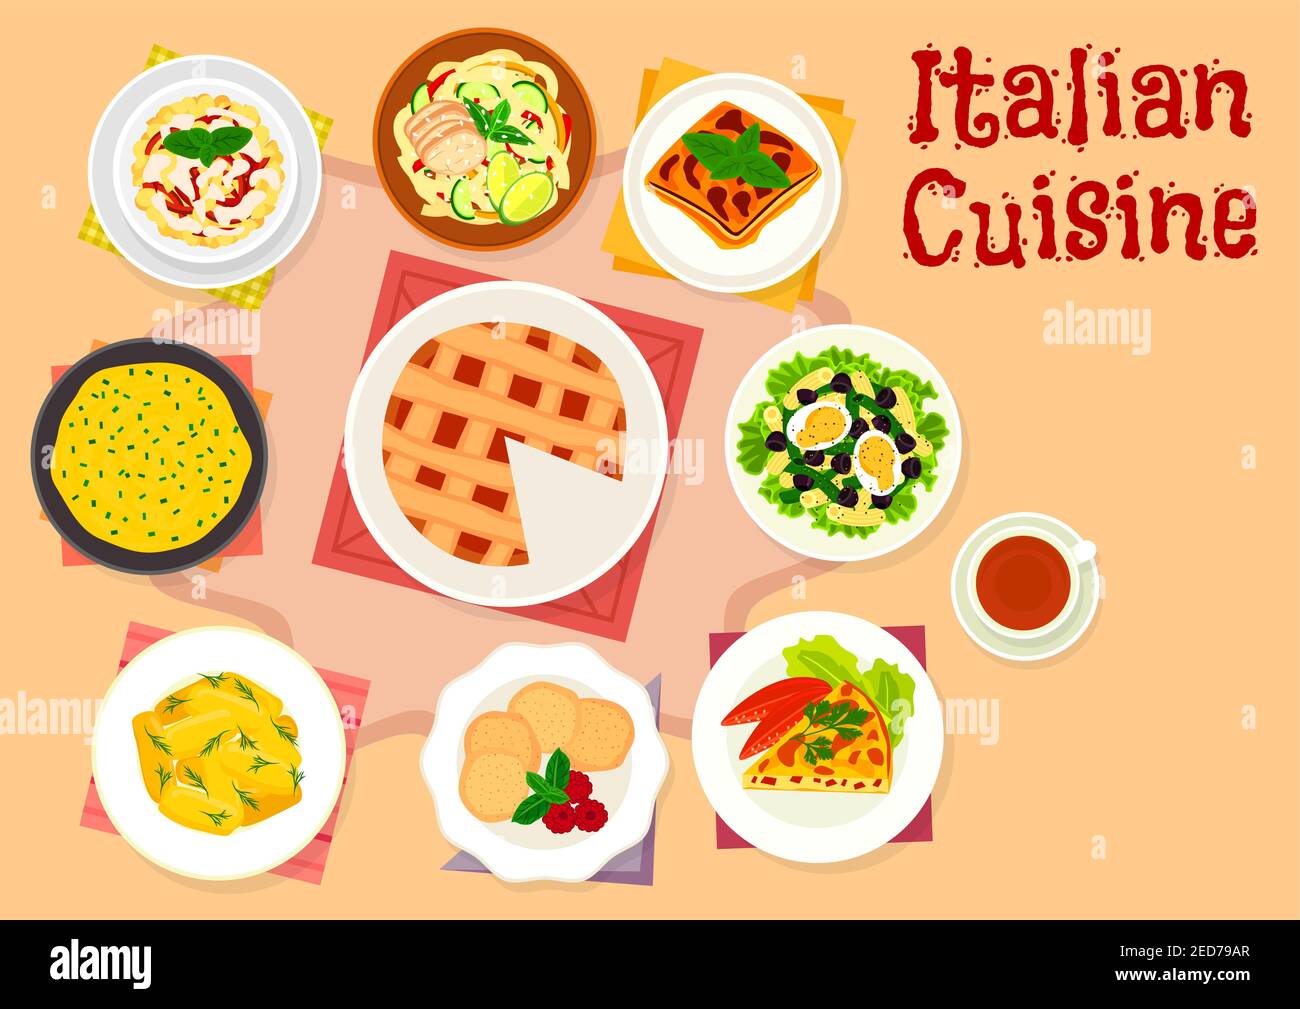 Italienische Küche Pasta-Salat Ikone serviert mit Bohnen, Oliven-und Ei, Auberginen Lasagne, Spaghetti mit Huhn, Kartoffelknödel, Gemüse Omelette, polen Stock Vektor